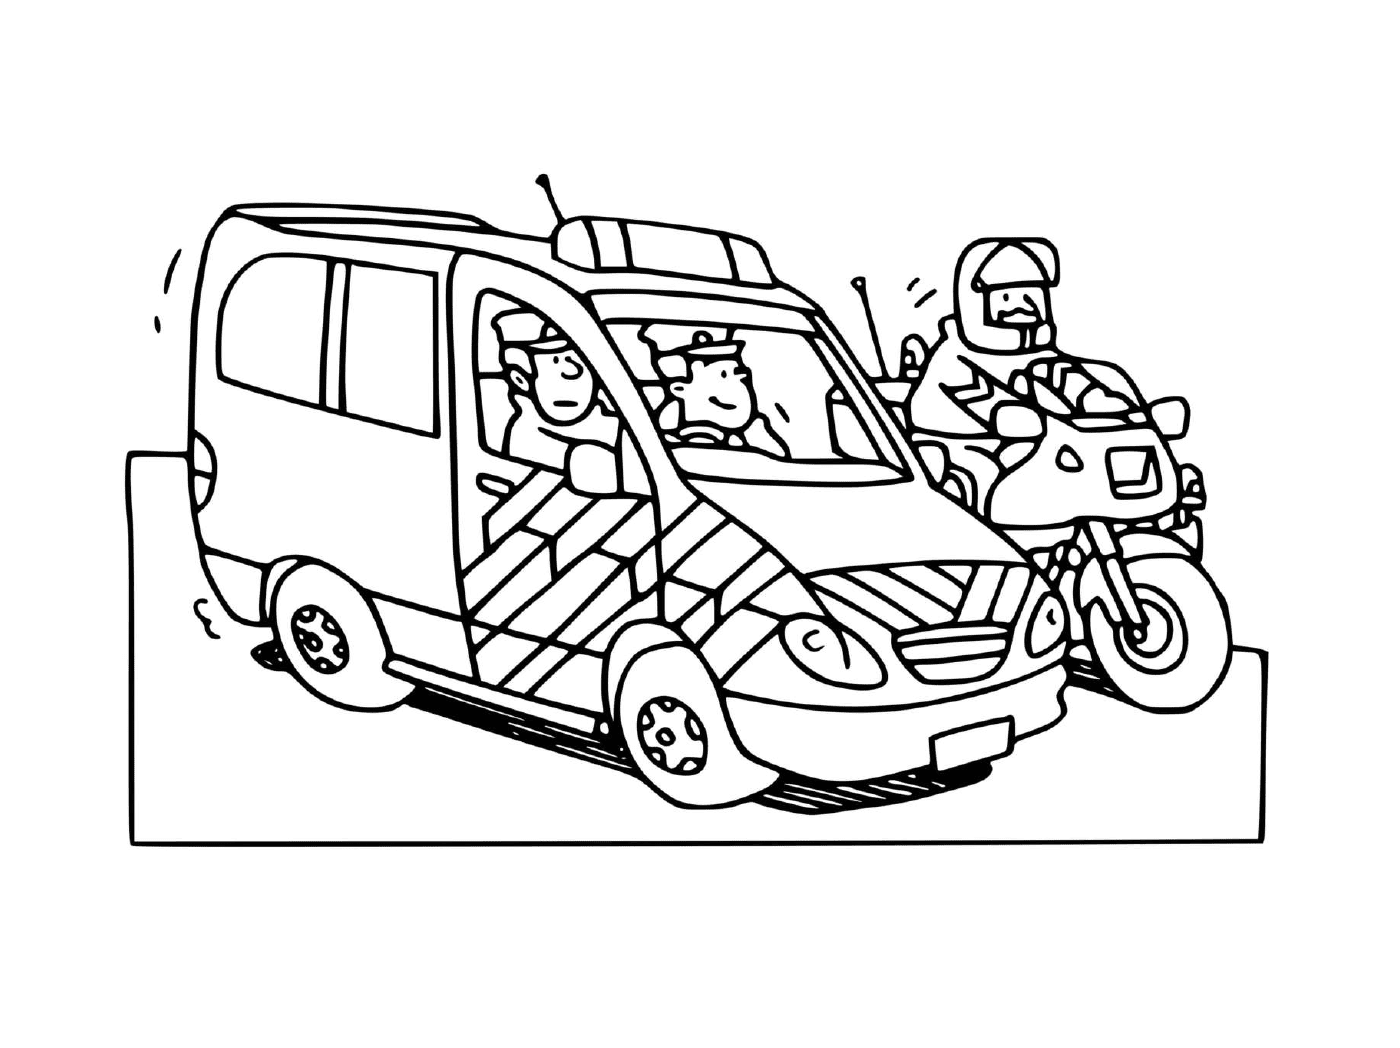  Auto della polizia francese con motocicletta 